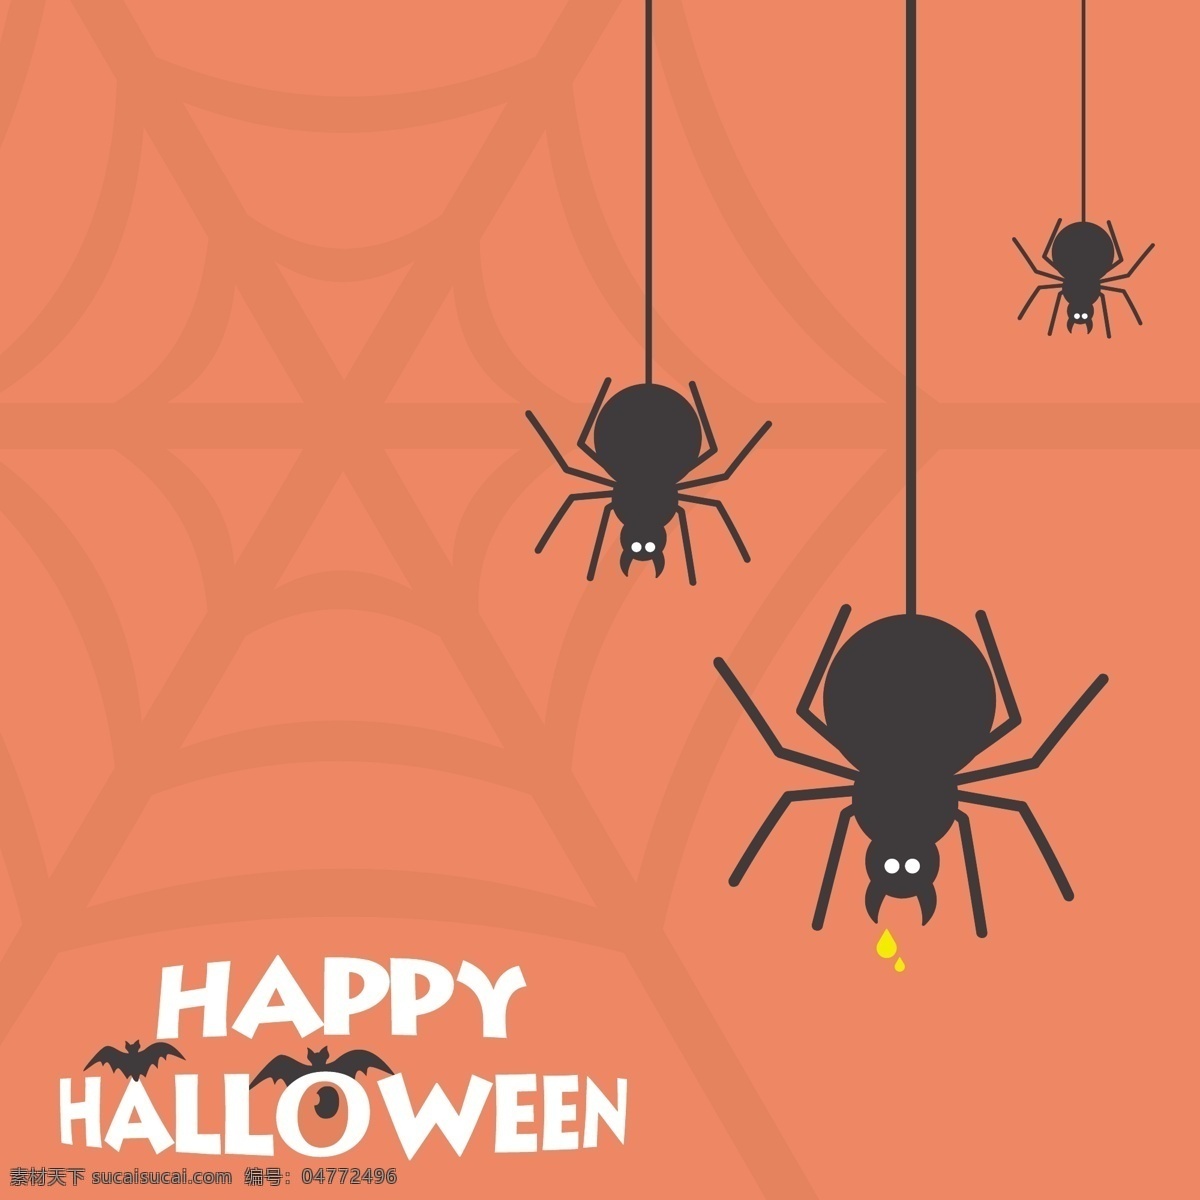 万圣节 快乐 恐怖 蜘蛛 卡 背景 庆典 节日 服装 邪恶 杰克 十月 走路 死亡 诡计 治疗